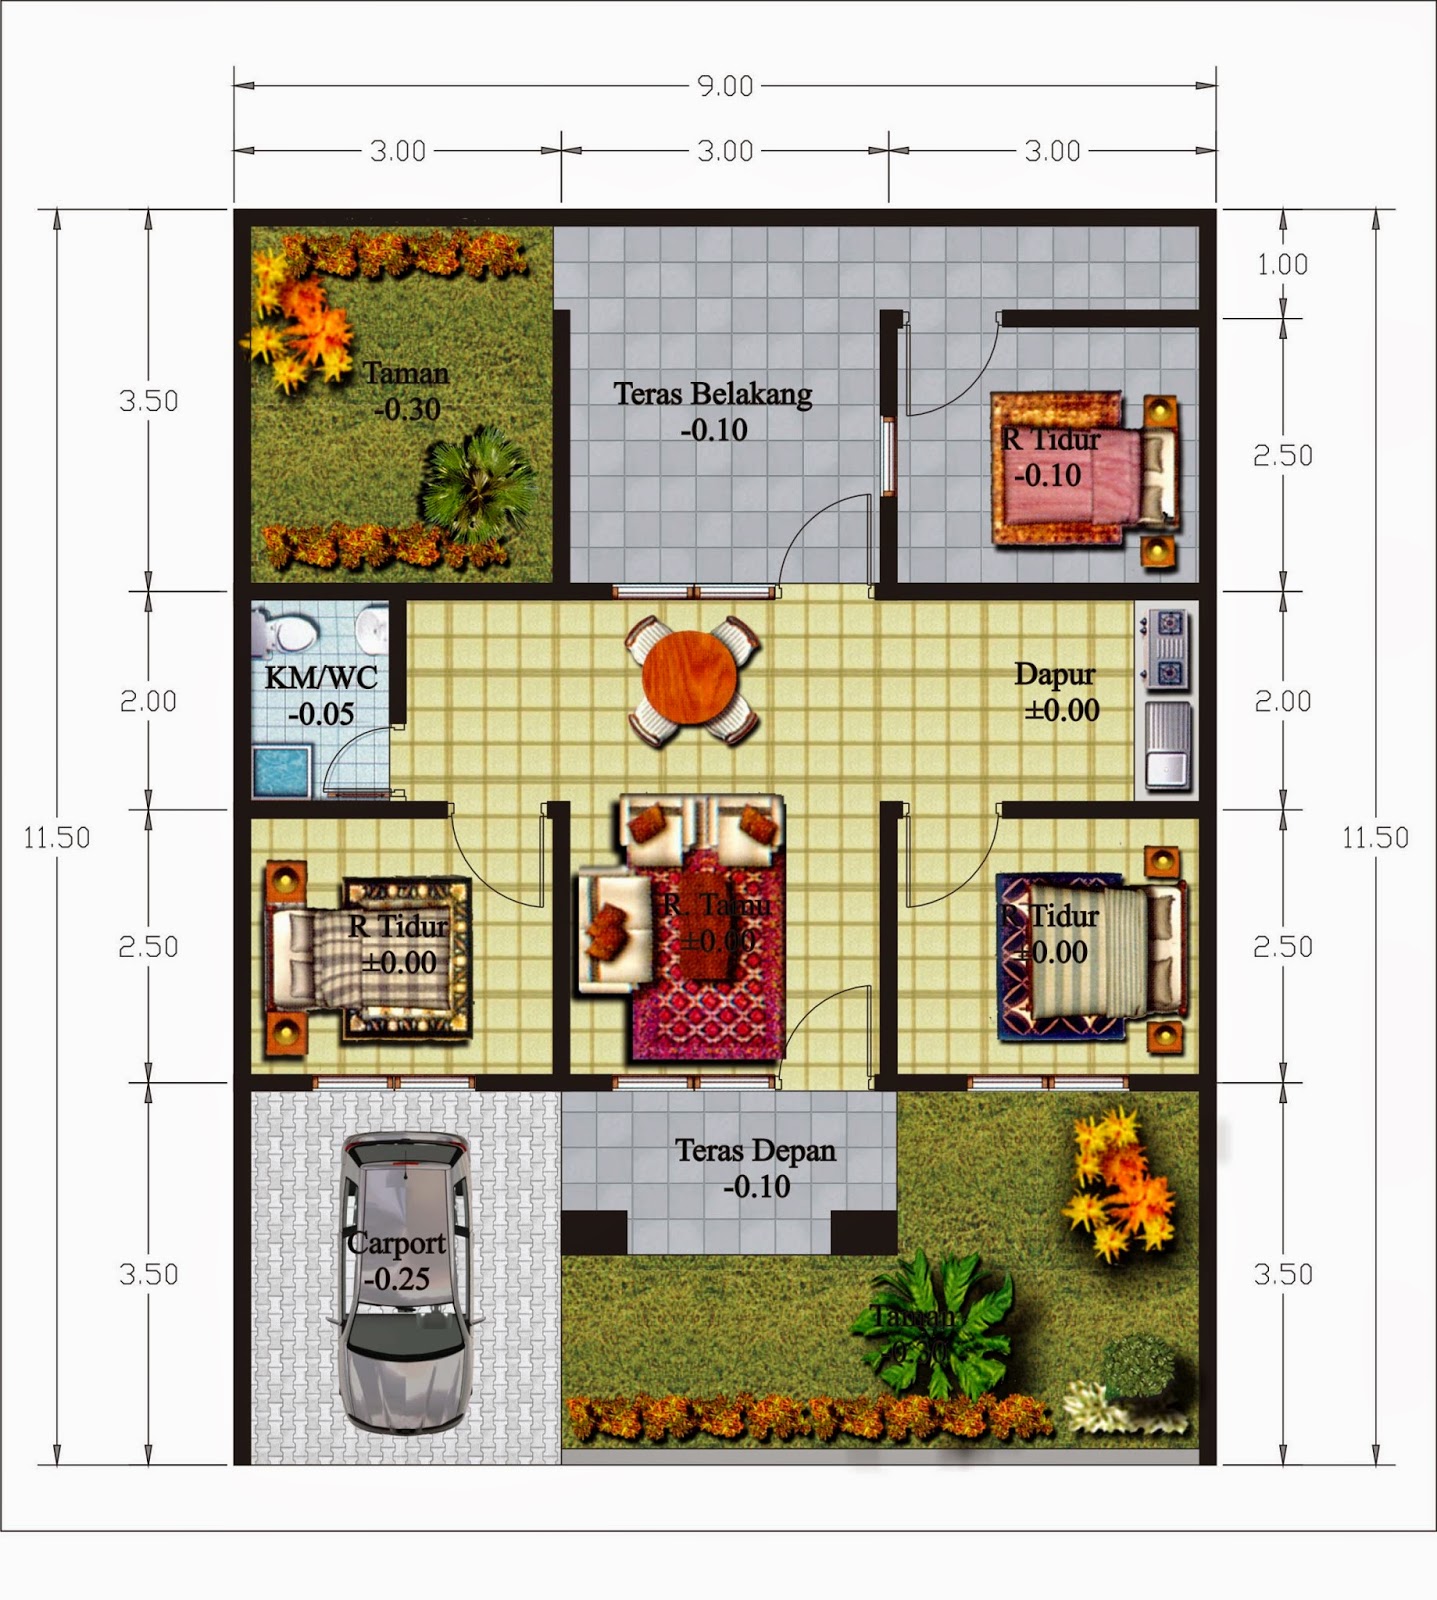  Denah  Rumah  Minimalis 1 Lantai Ukuran  10 X 15  Desain 